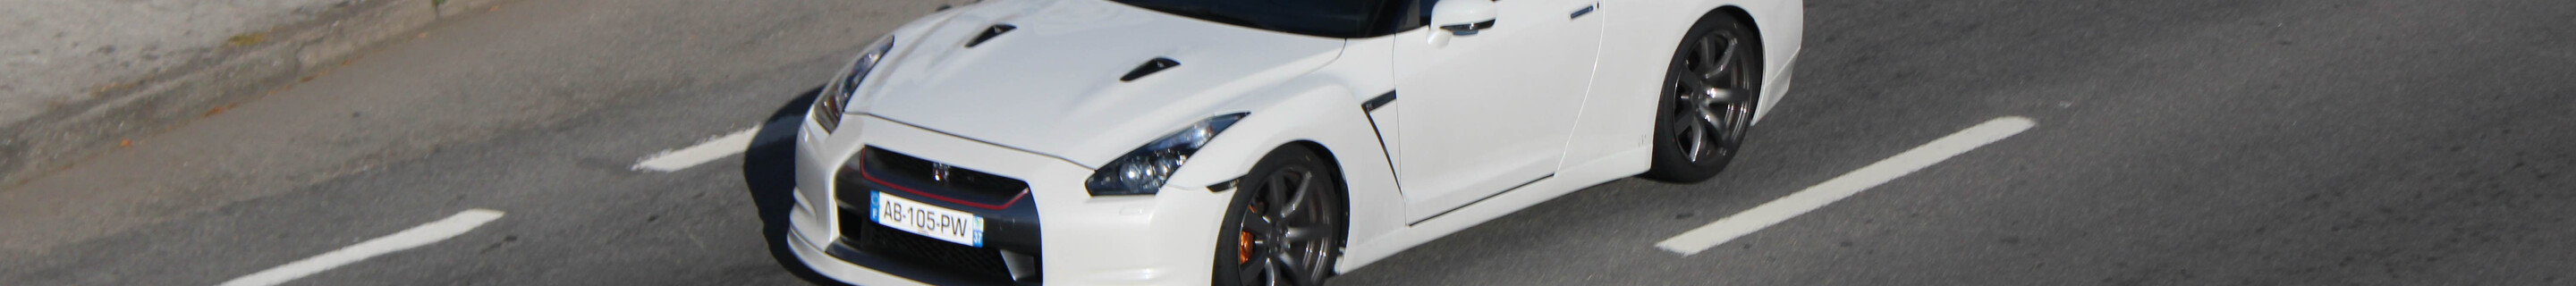 Nissan Shiftech GT-R 2011